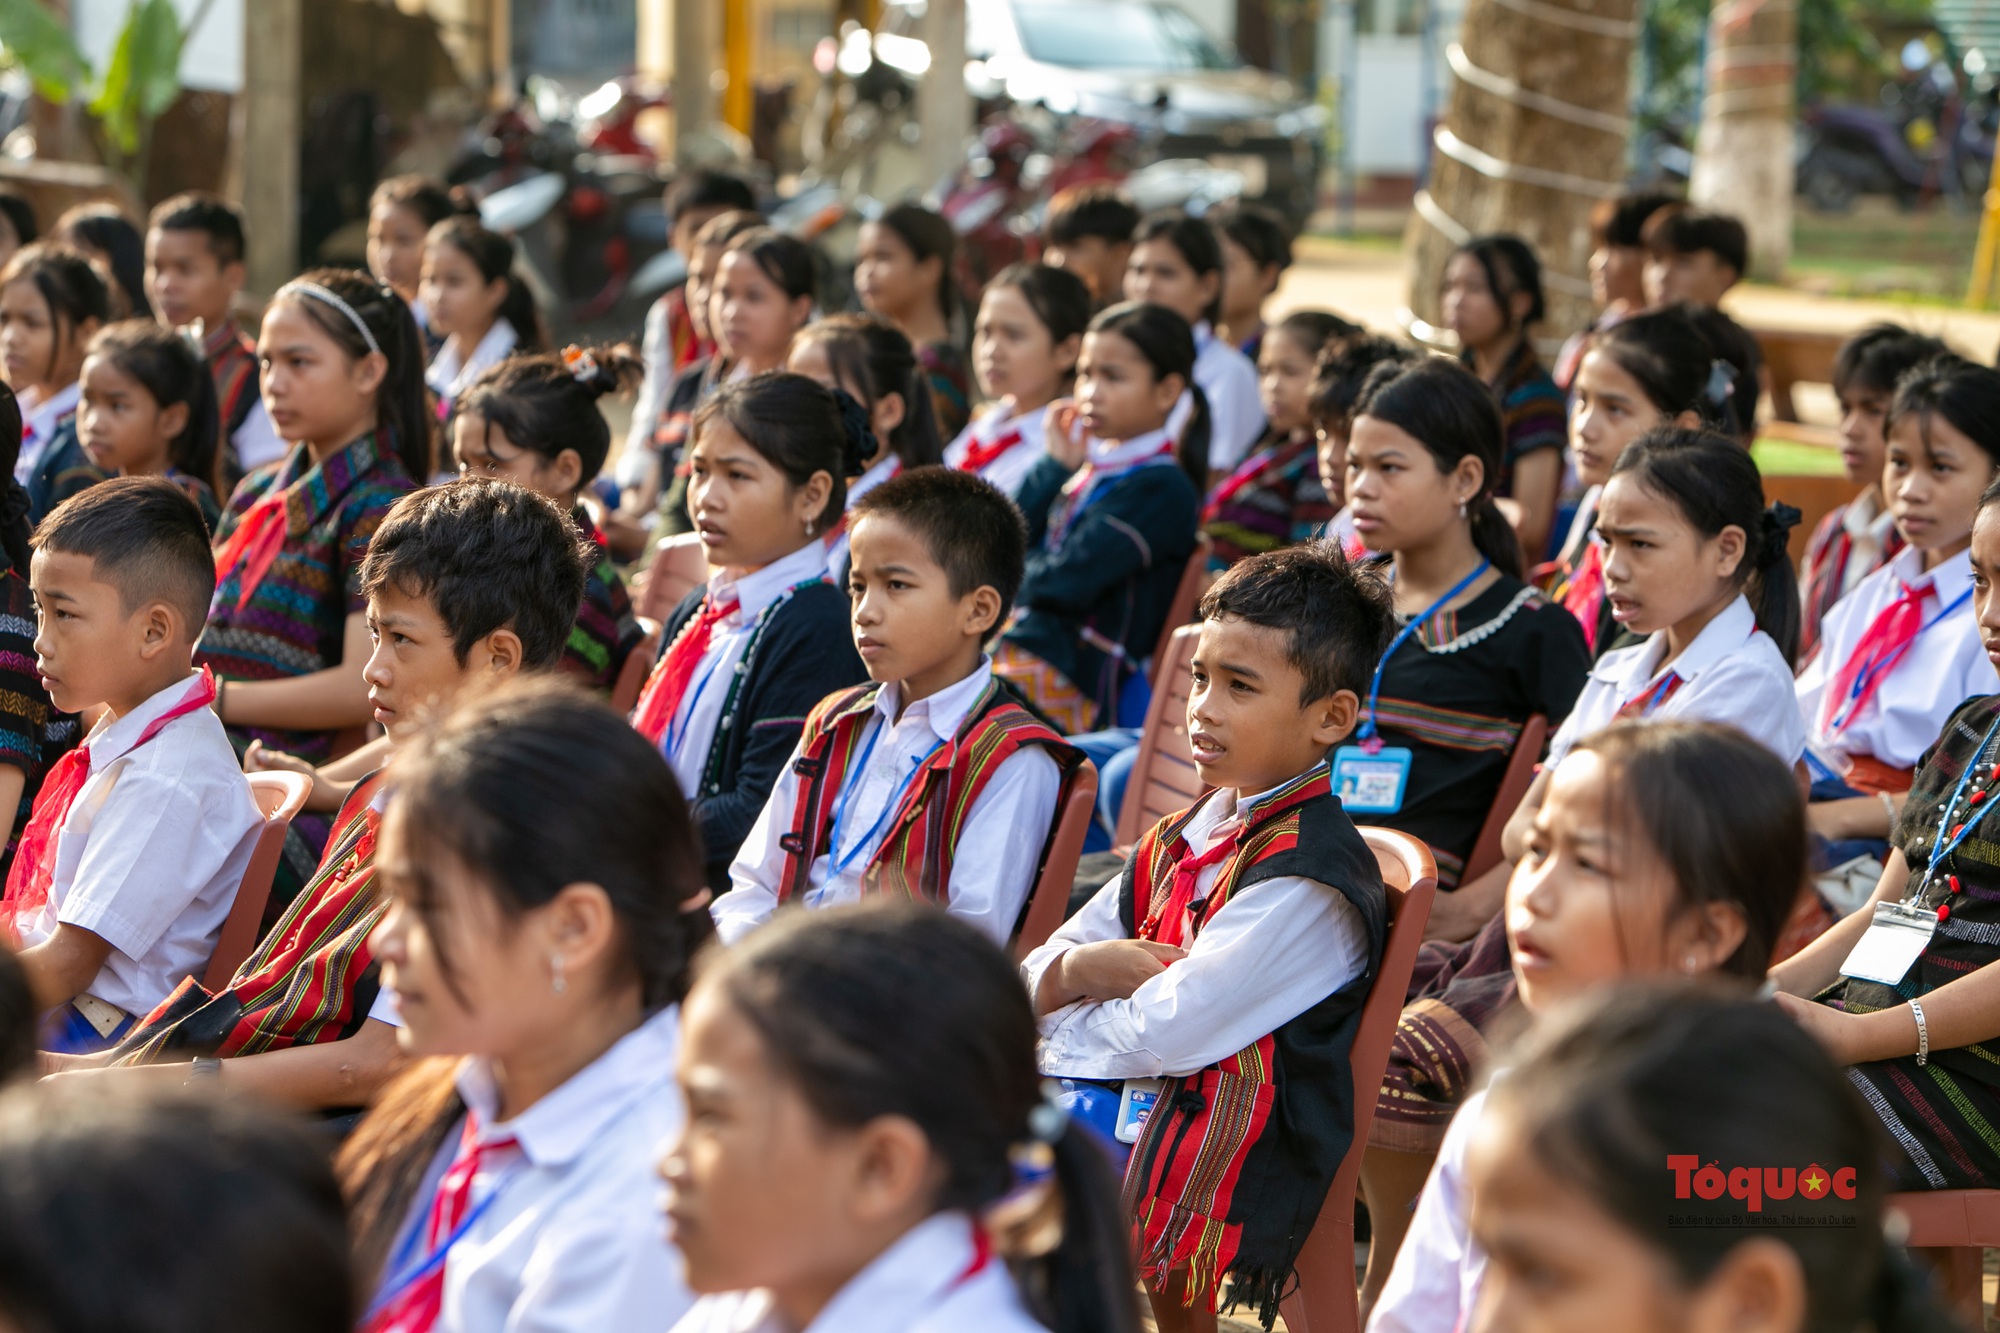 Khơi dậy niềm tự hào về trang phục truyền thống các dân tộc trong trường học - Ảnh 7.